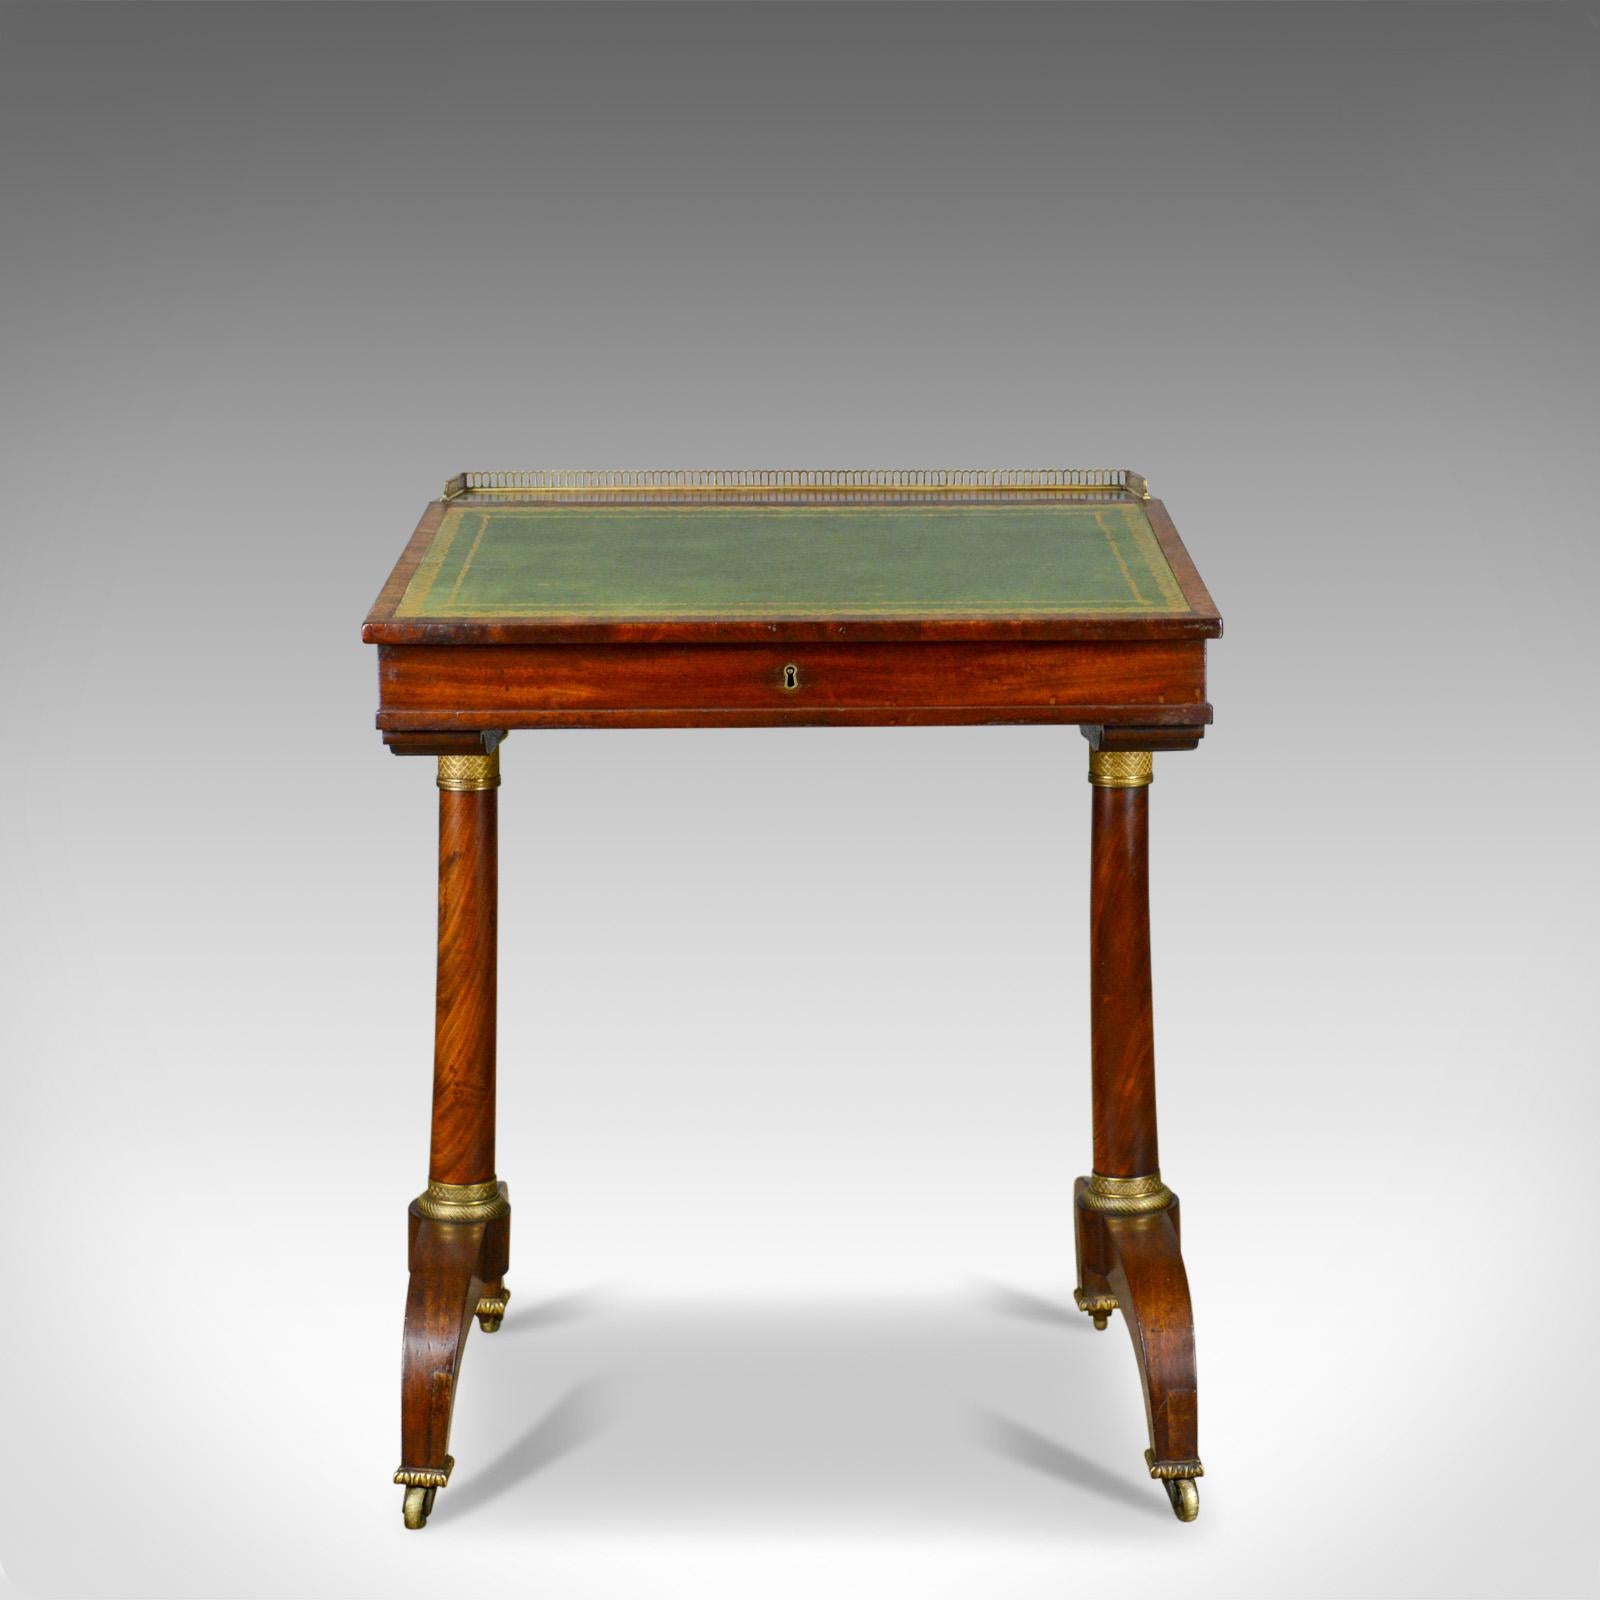 Il s'agit d'une table d'écriture antique, une anglaise, Regency, acajou, ouverte Davenport datant du début du 19ème siècle, vers 1820.

Un artisanat de qualité en acajou sélectionné
Bonne couleur avec une patine d'âge souhaitable
Grain